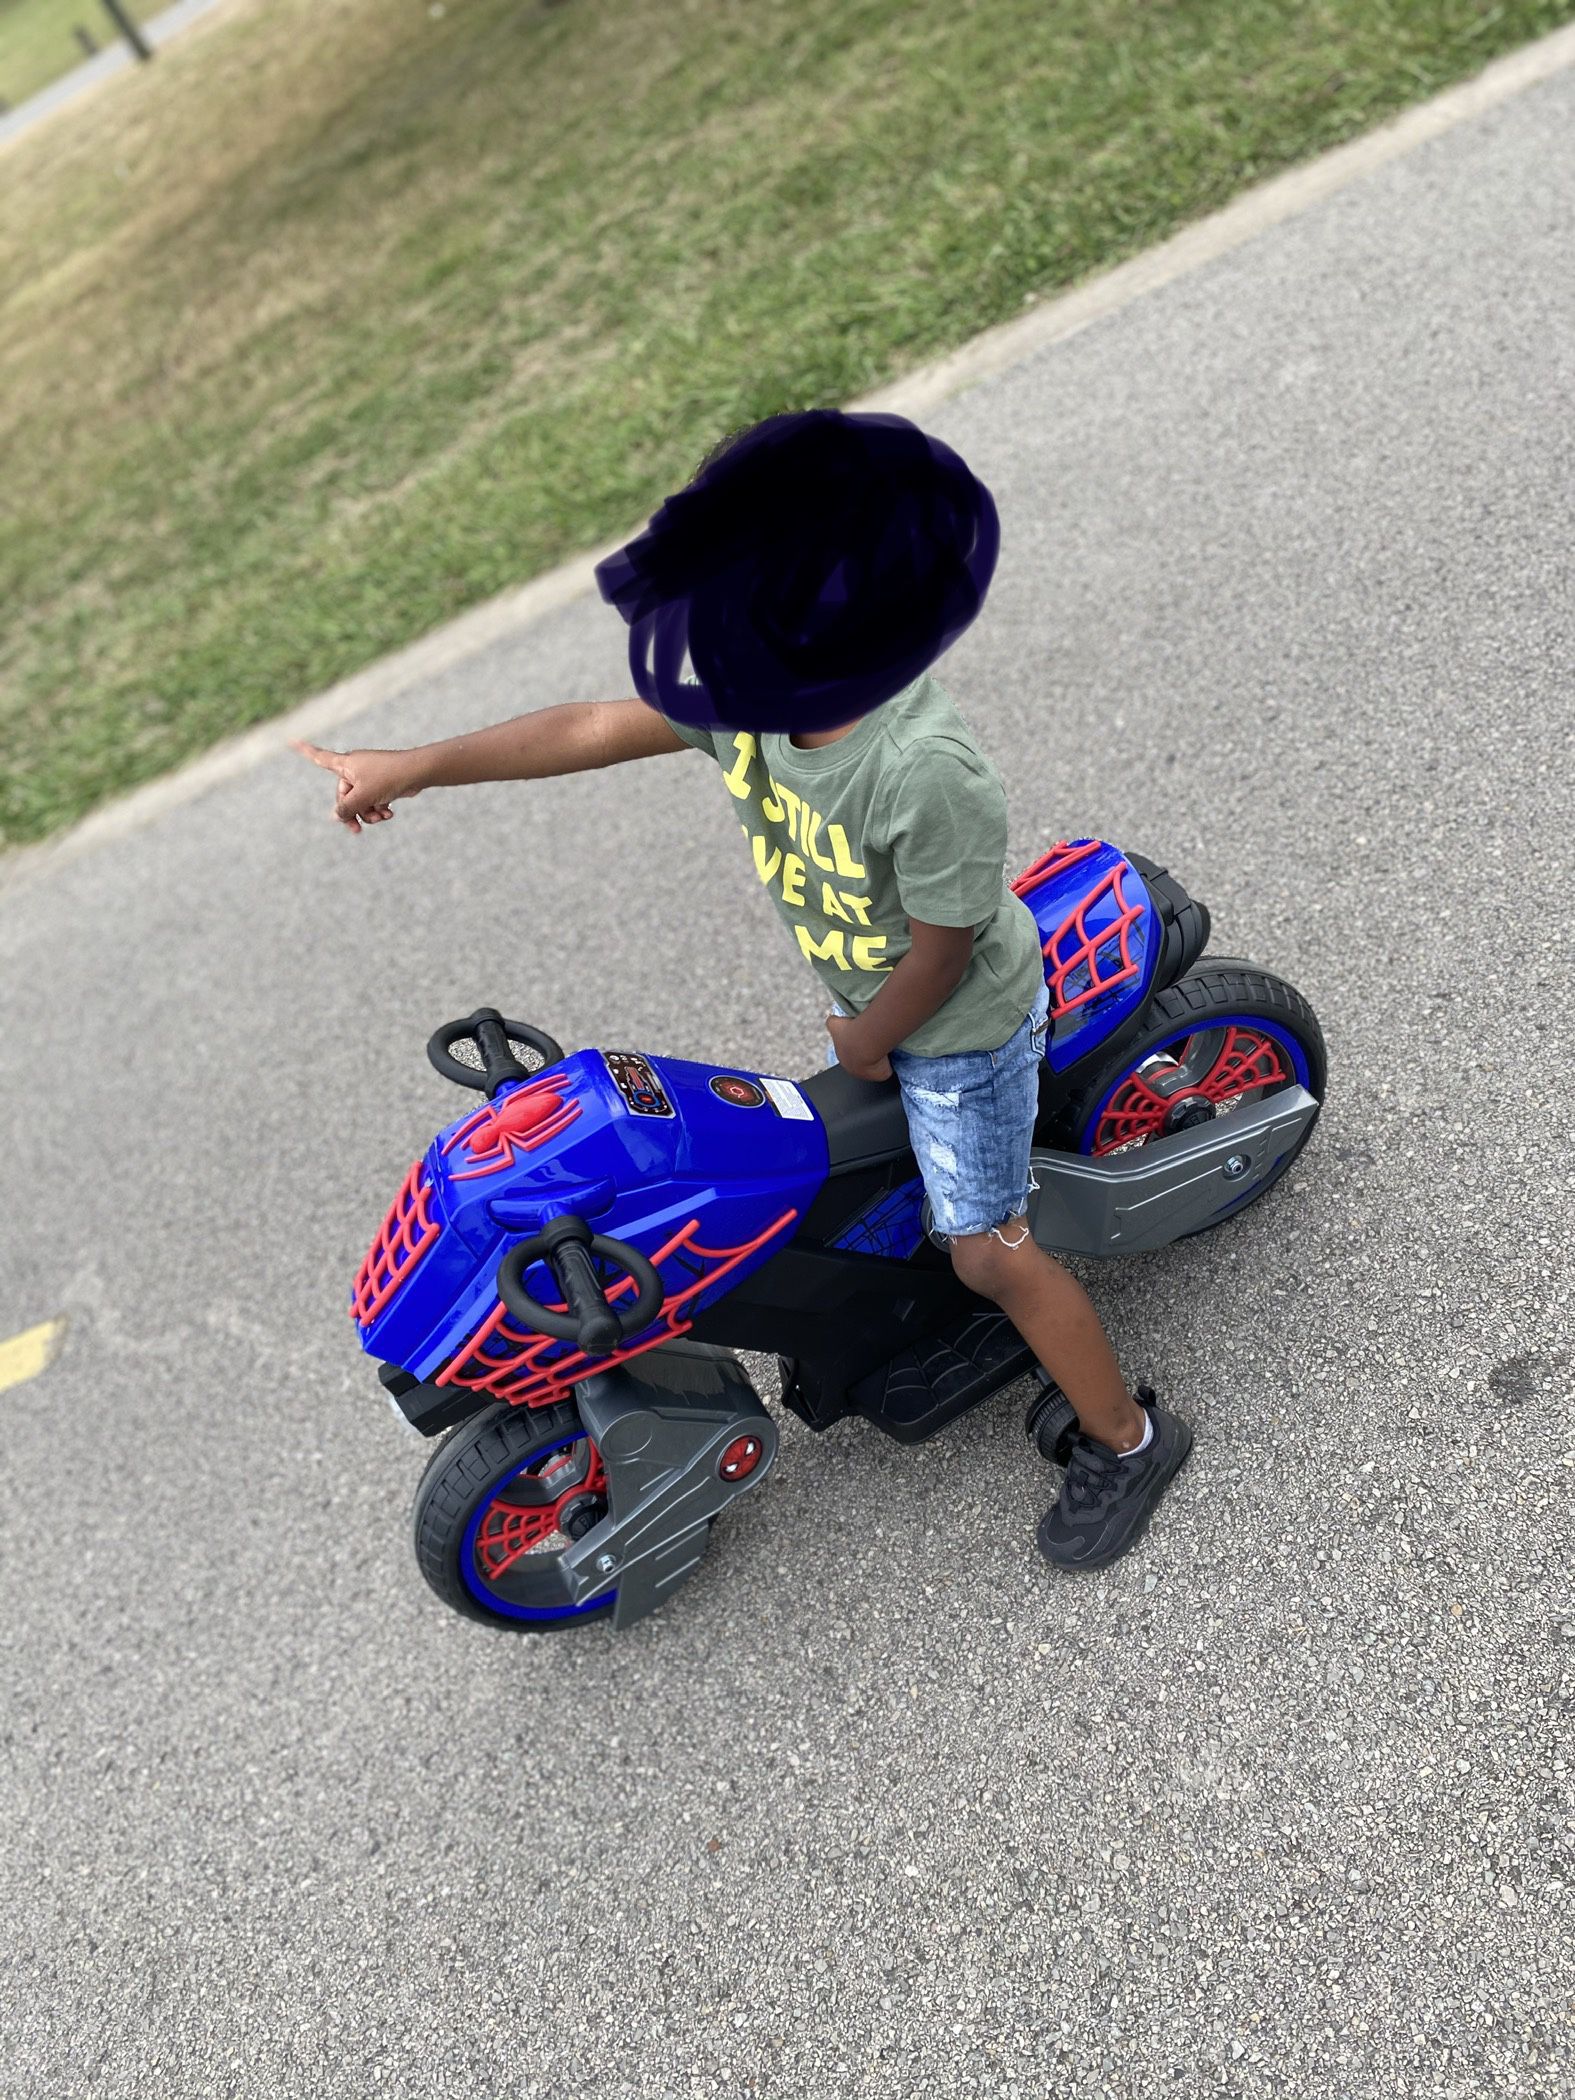 SpiderMan motorcycle 